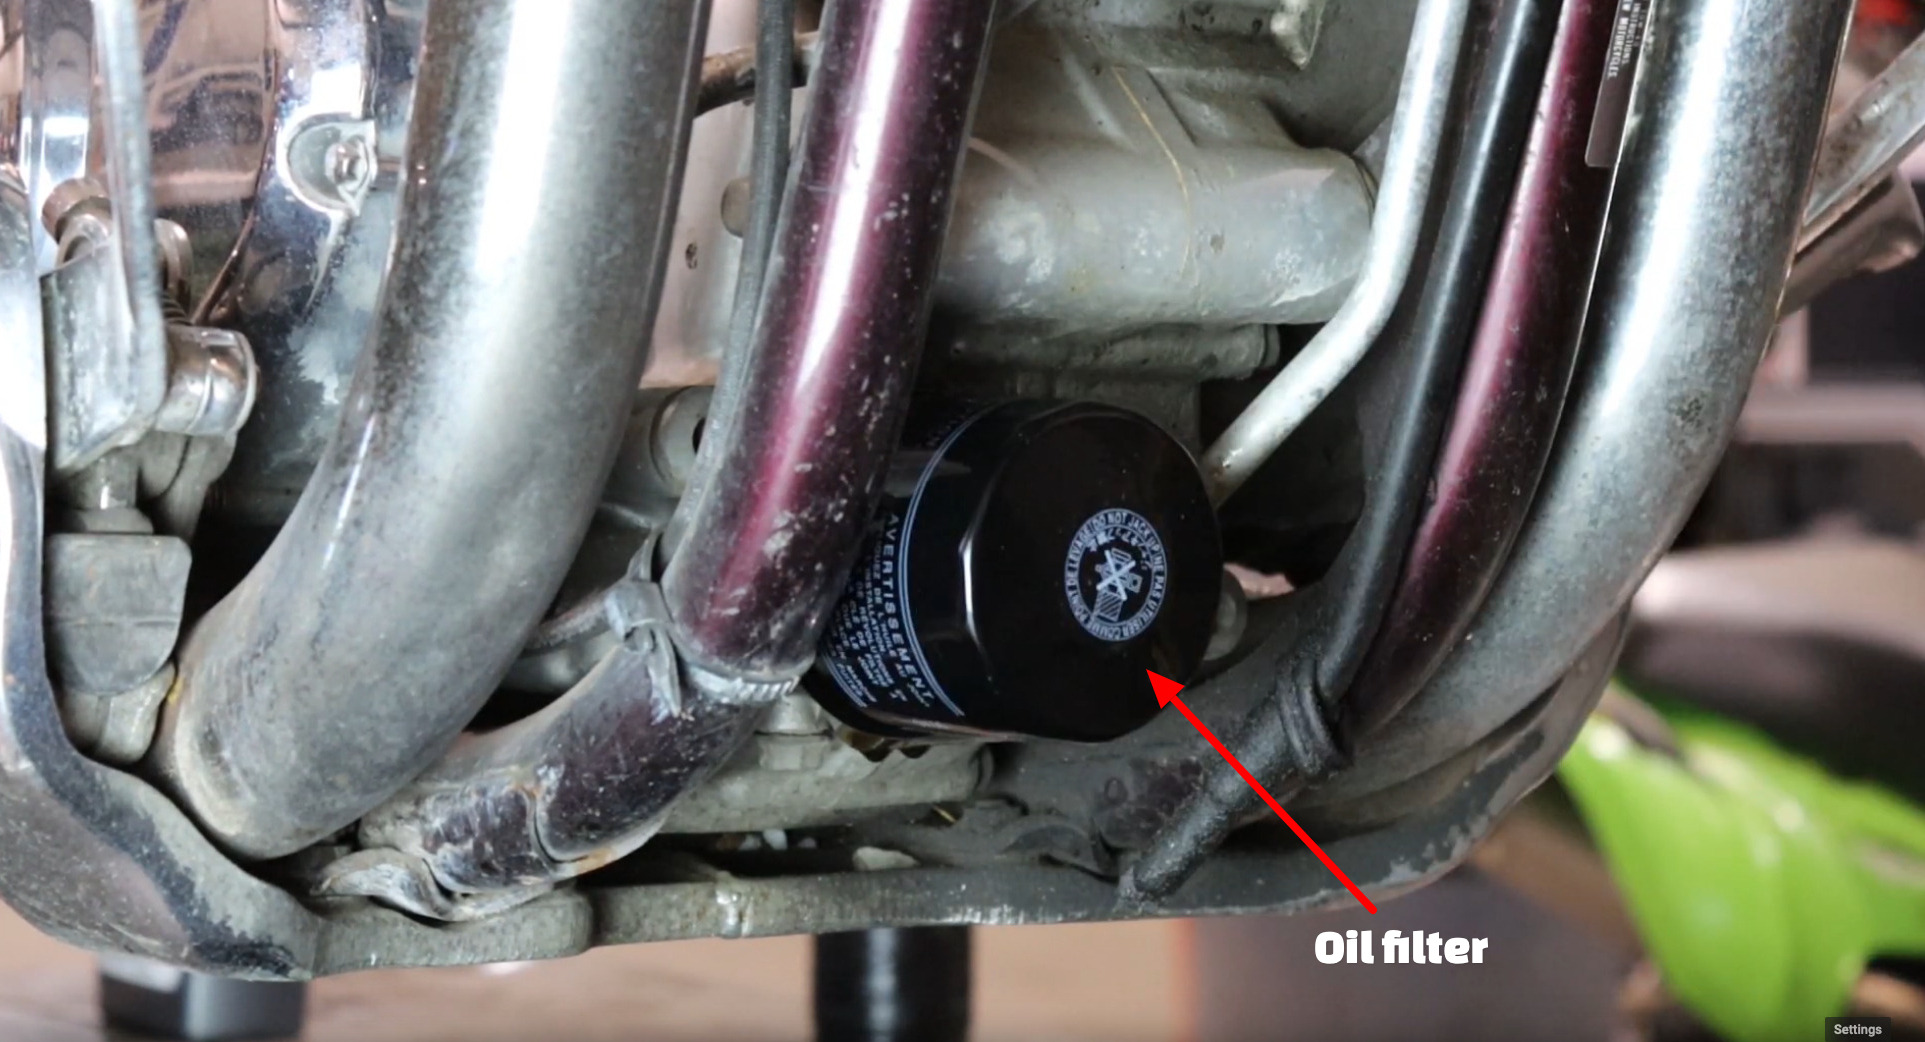 Suzuki Intruder oil filter change